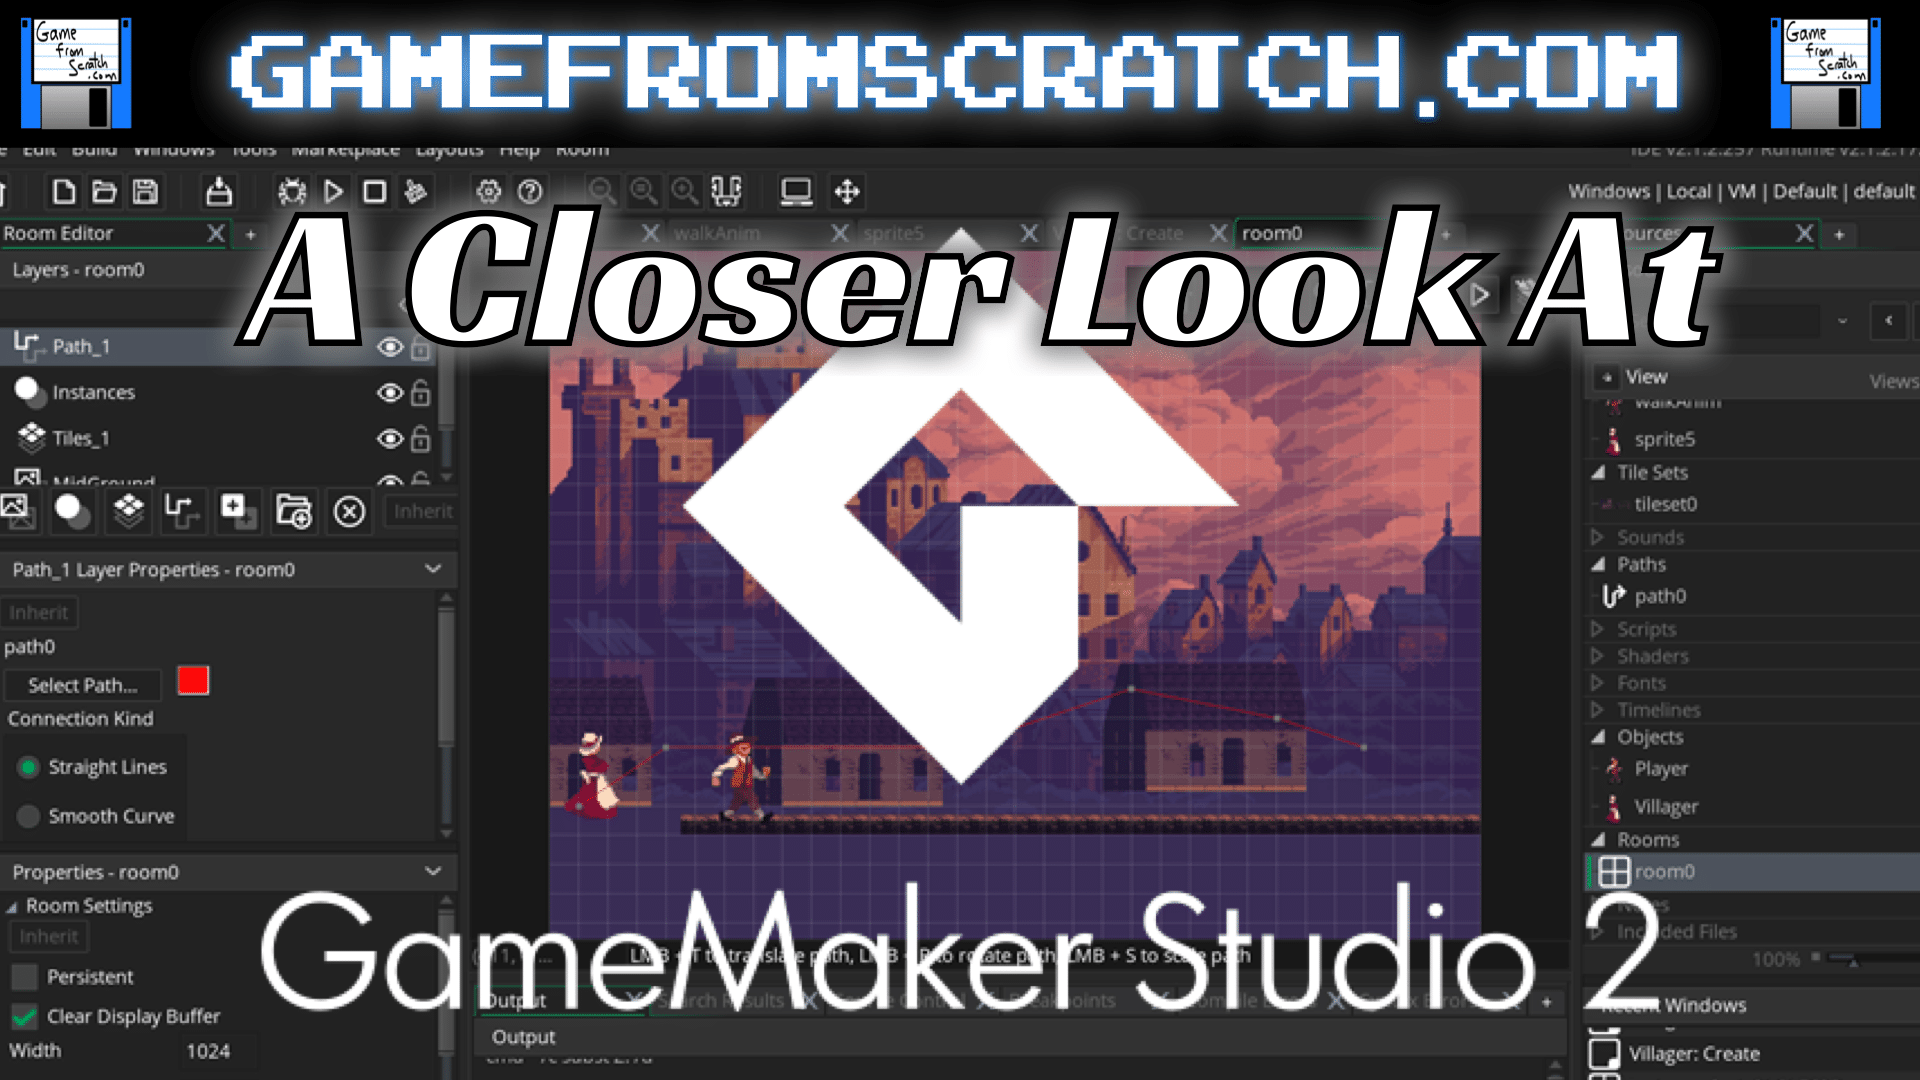 A Closer Look At GameMaker Studio 2 – 